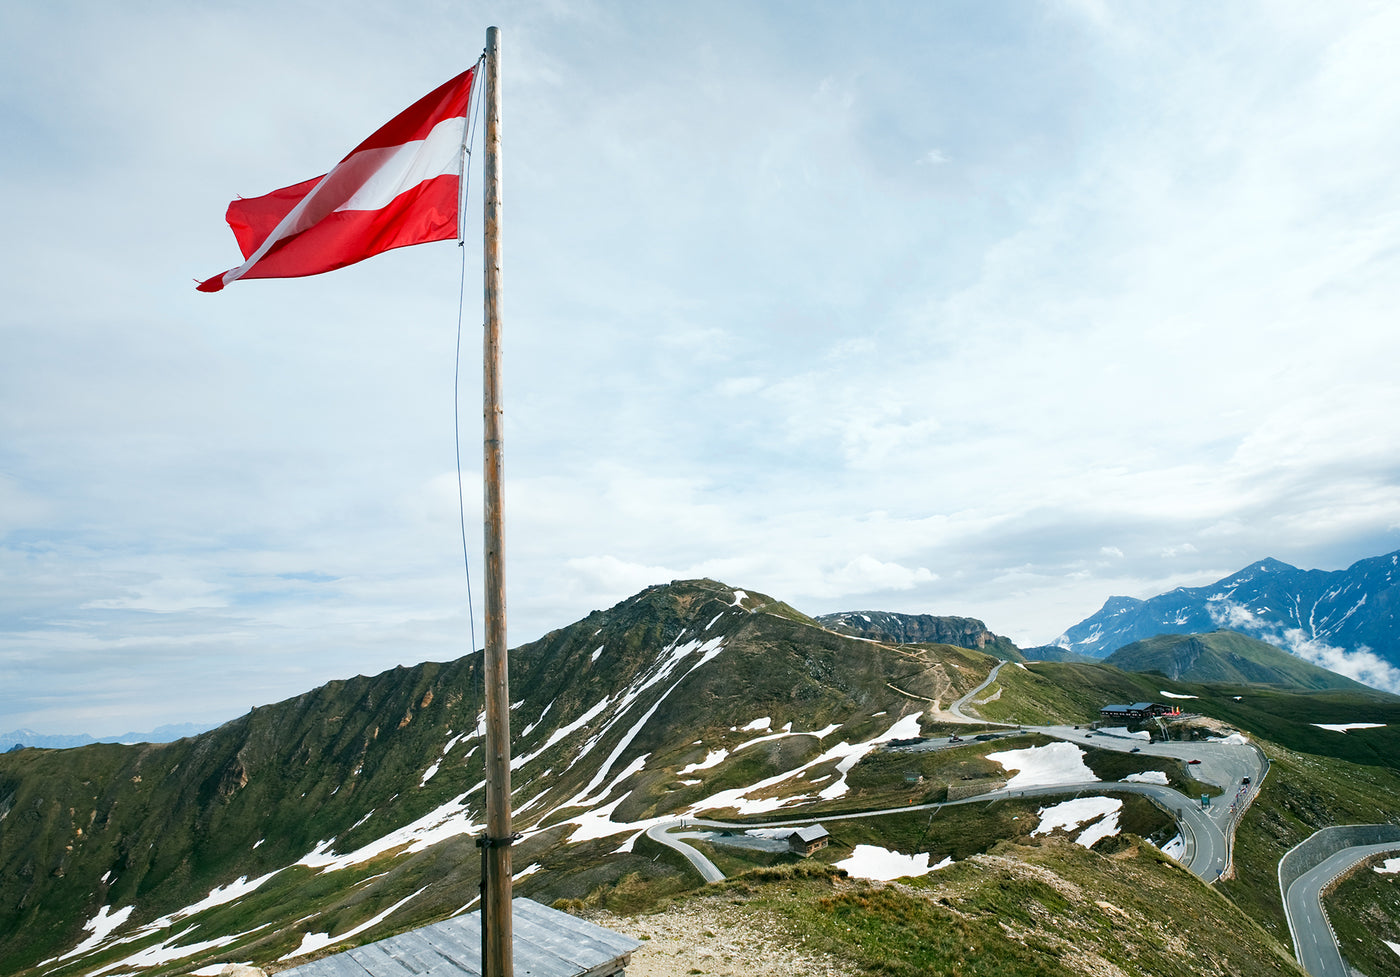 7 Klettergebiete in Österreich, die du kennen musst - Klettern und Bouldern in Österreich